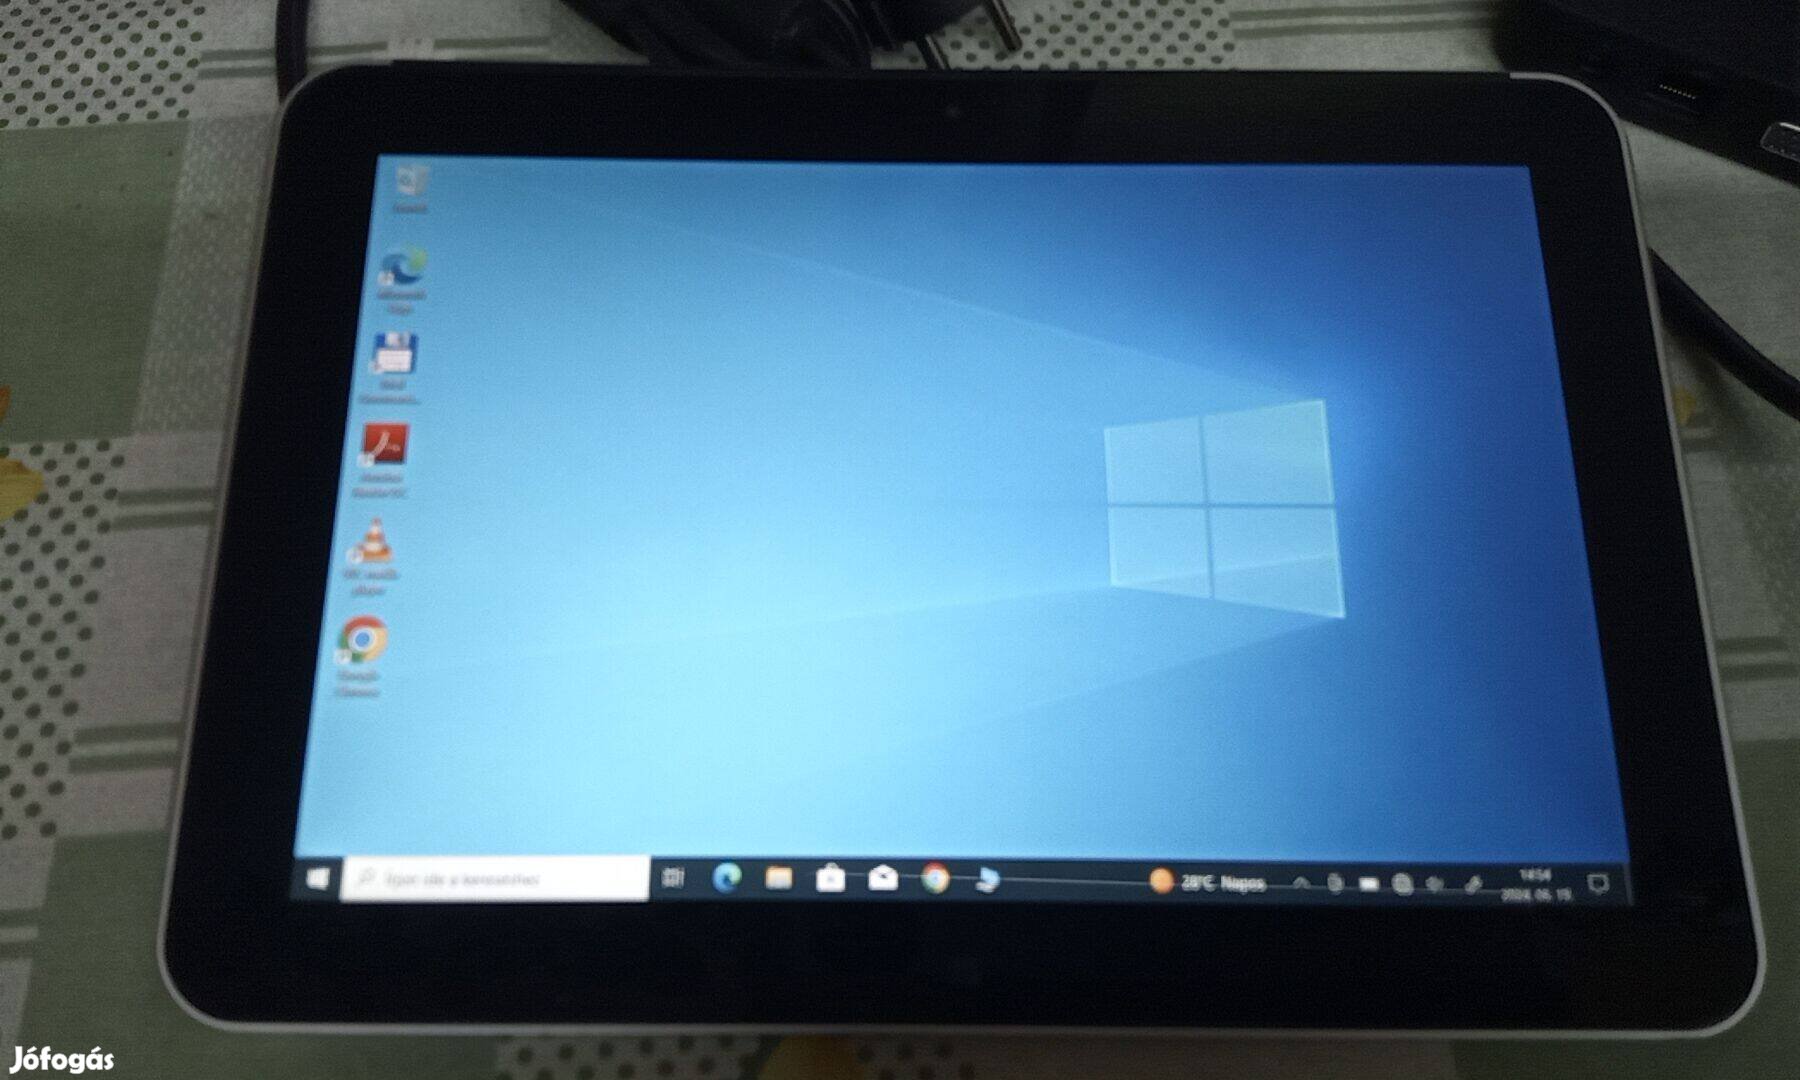 Eladó egy Win.10, HP Elitepad 1000 G2 tipusú nagy tablet